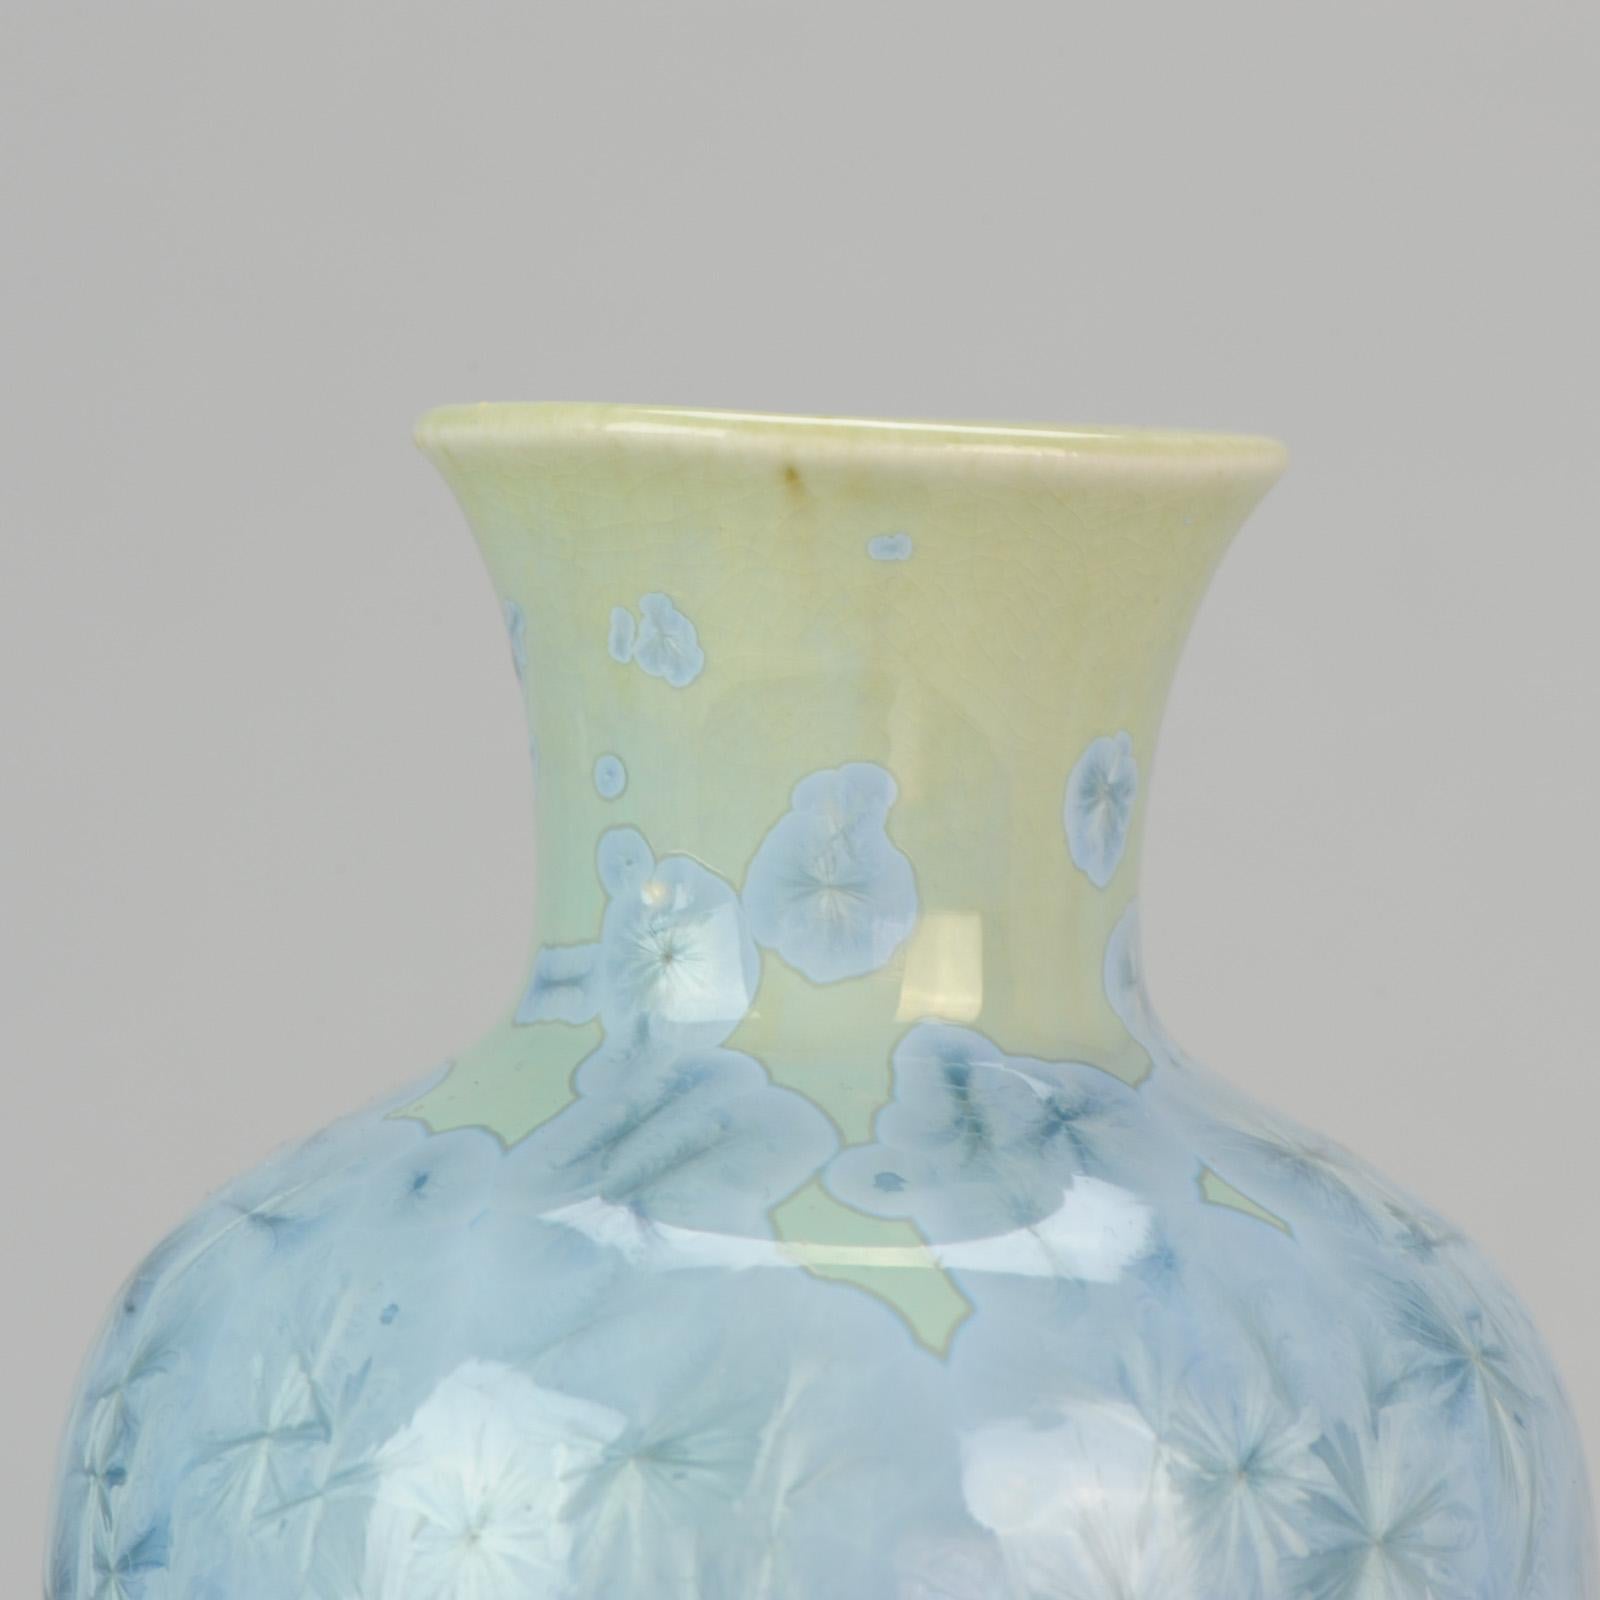 Shiwan 20th Century PRoC 1970-1980 Chinese Porcelain Vase Crystalline Glaz 6